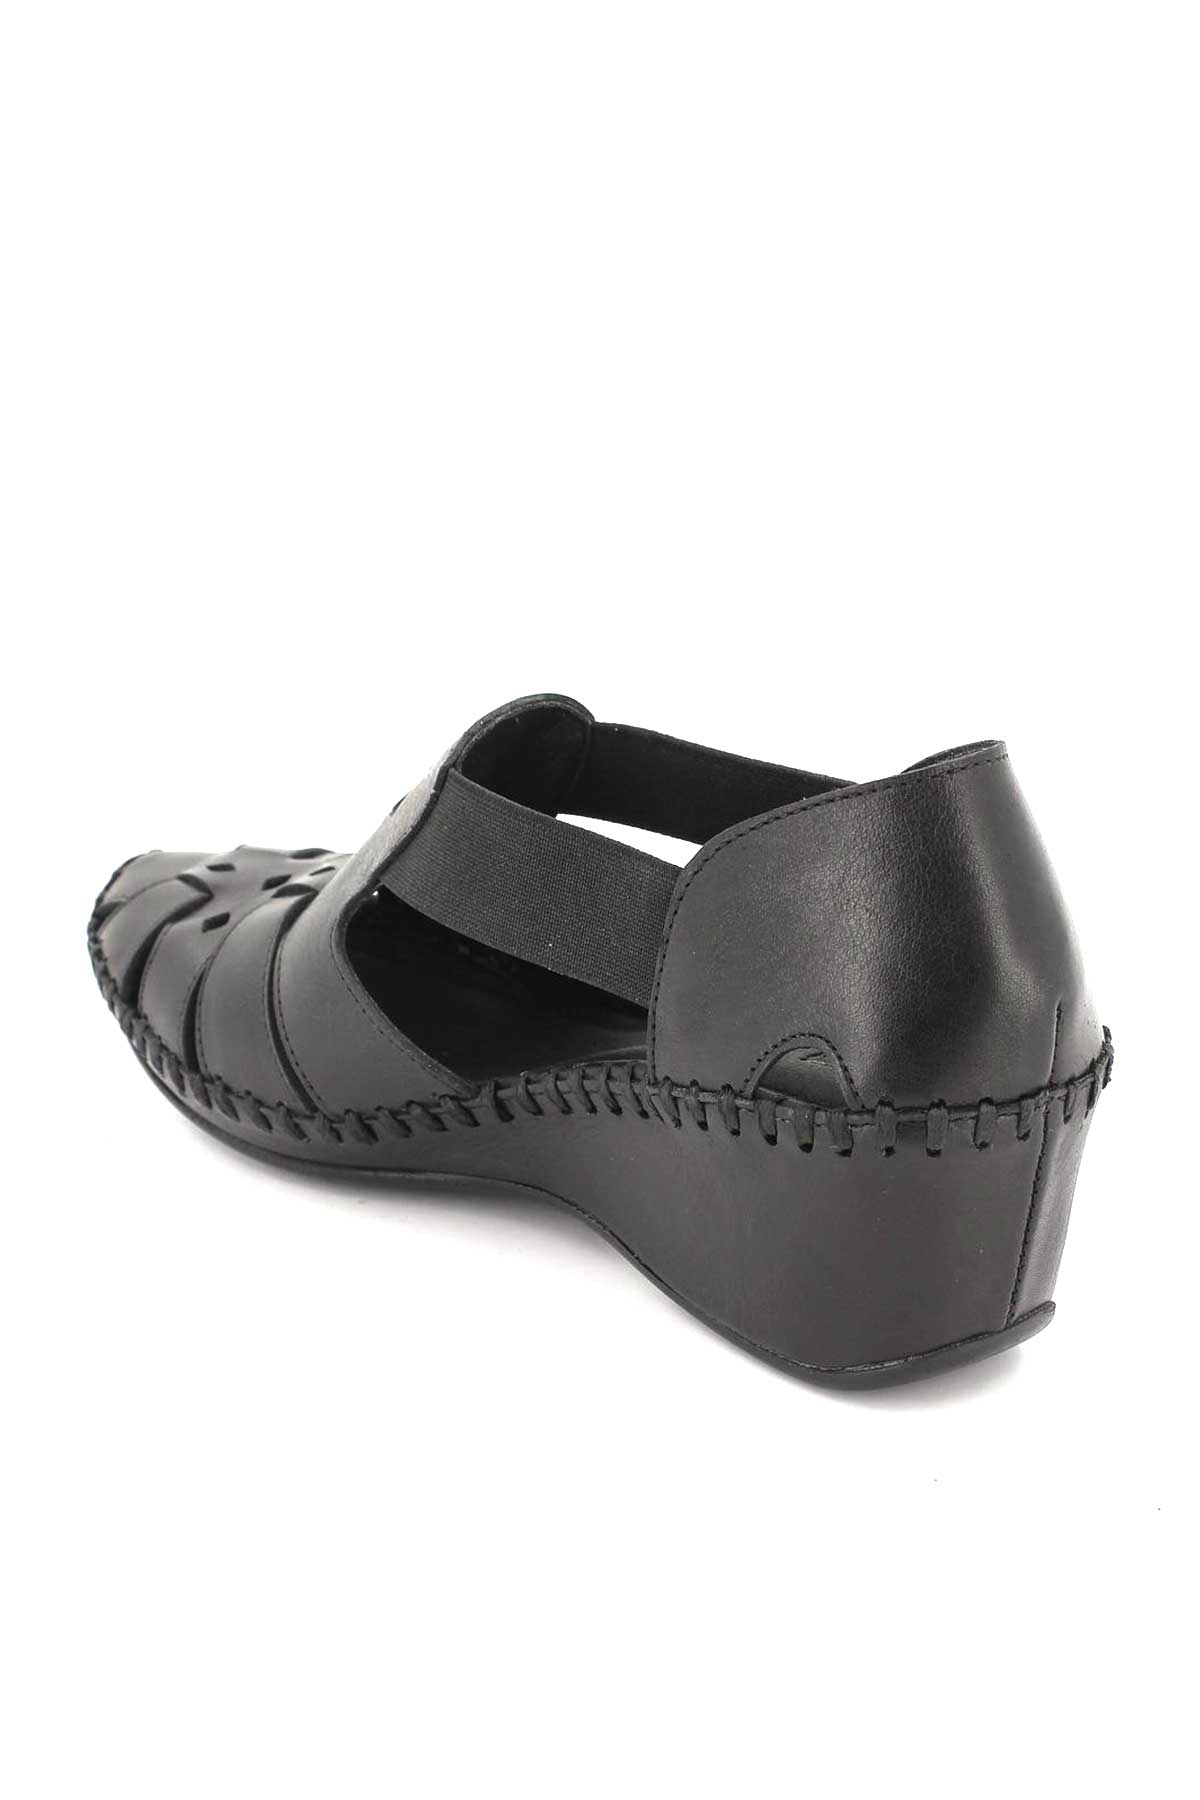 Kadın Comfort Deri Sandalet Siyah 18793056